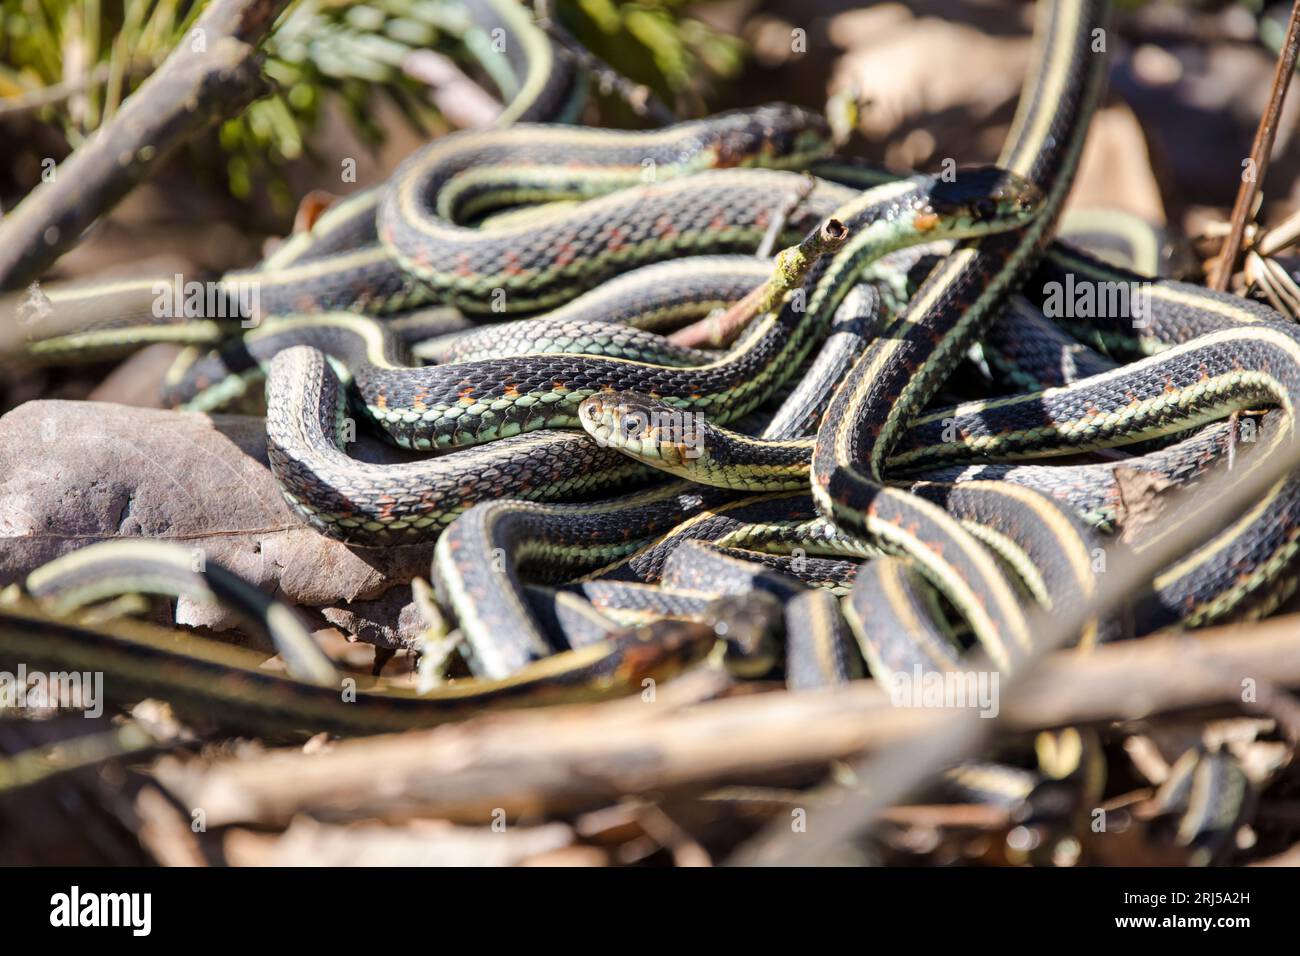 Garter snake in mating snake ball Stock Photo